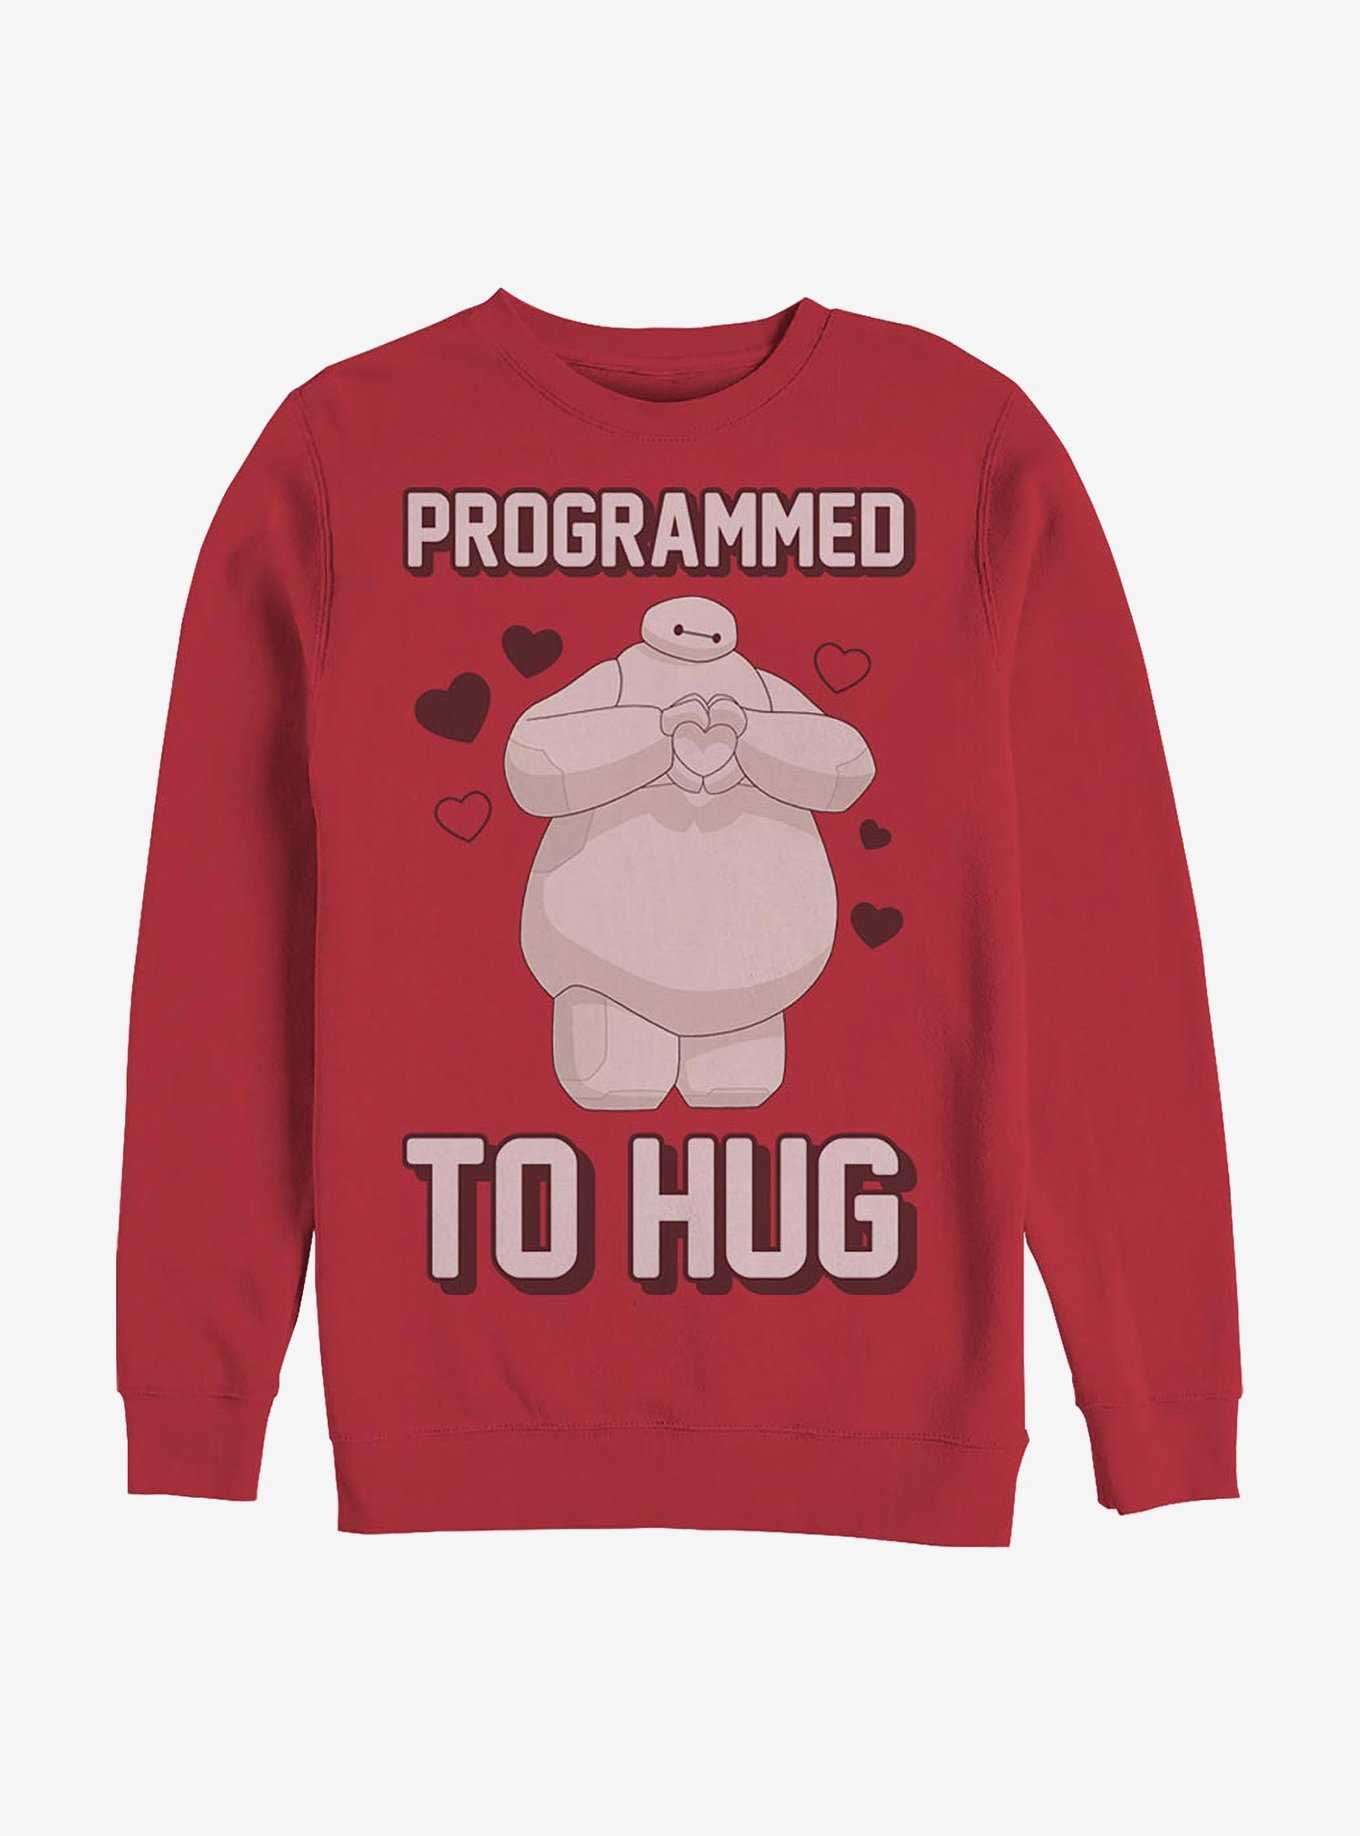 Disney Big Hero 6 Programmed To Hug Crew Sweatshirt, , hi-res